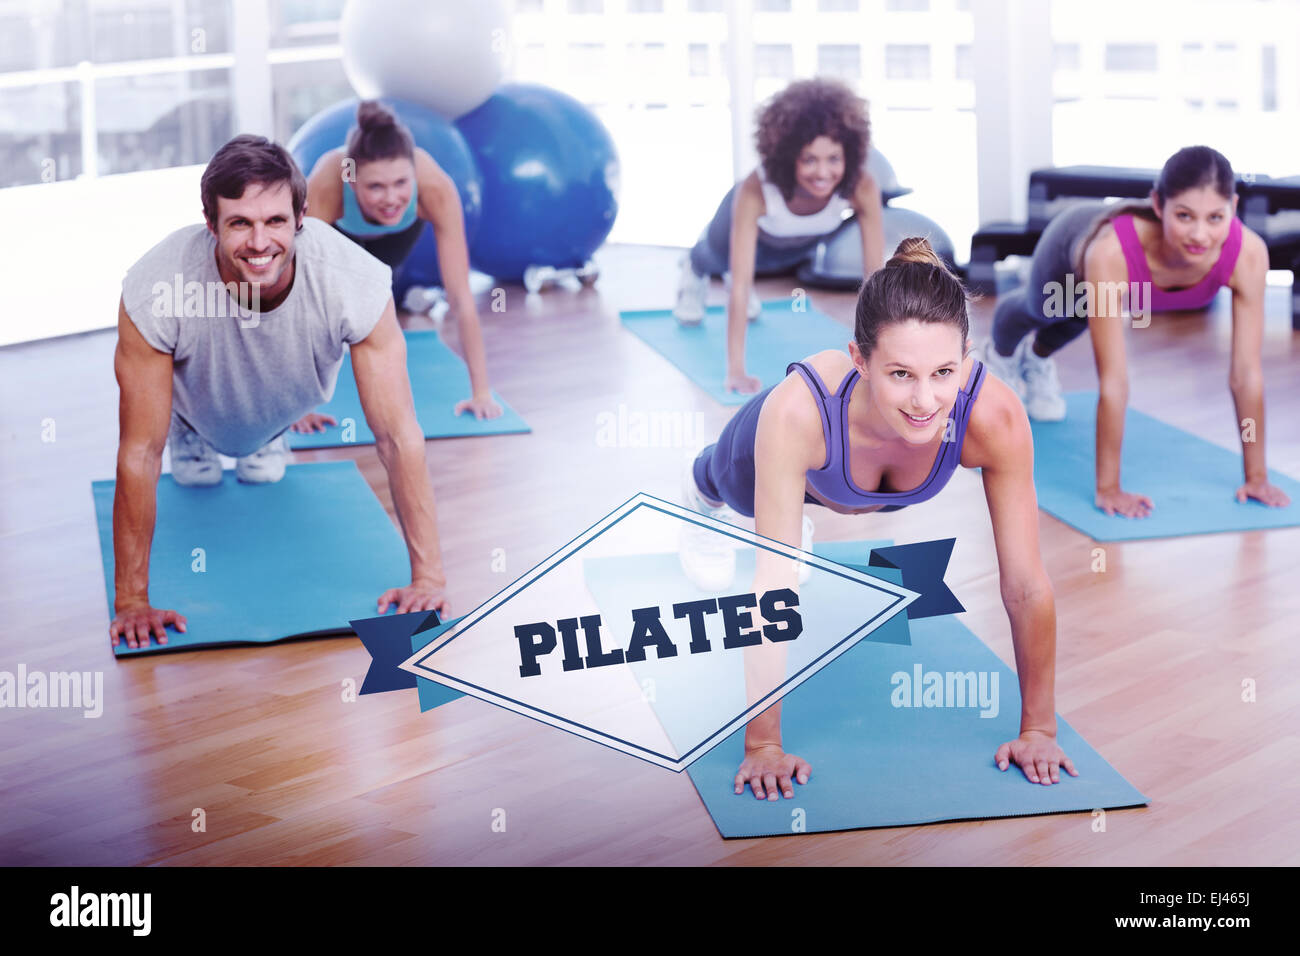 Le mot de pilates et des gens qui font pousser ups in fitness studio Banque D'Images